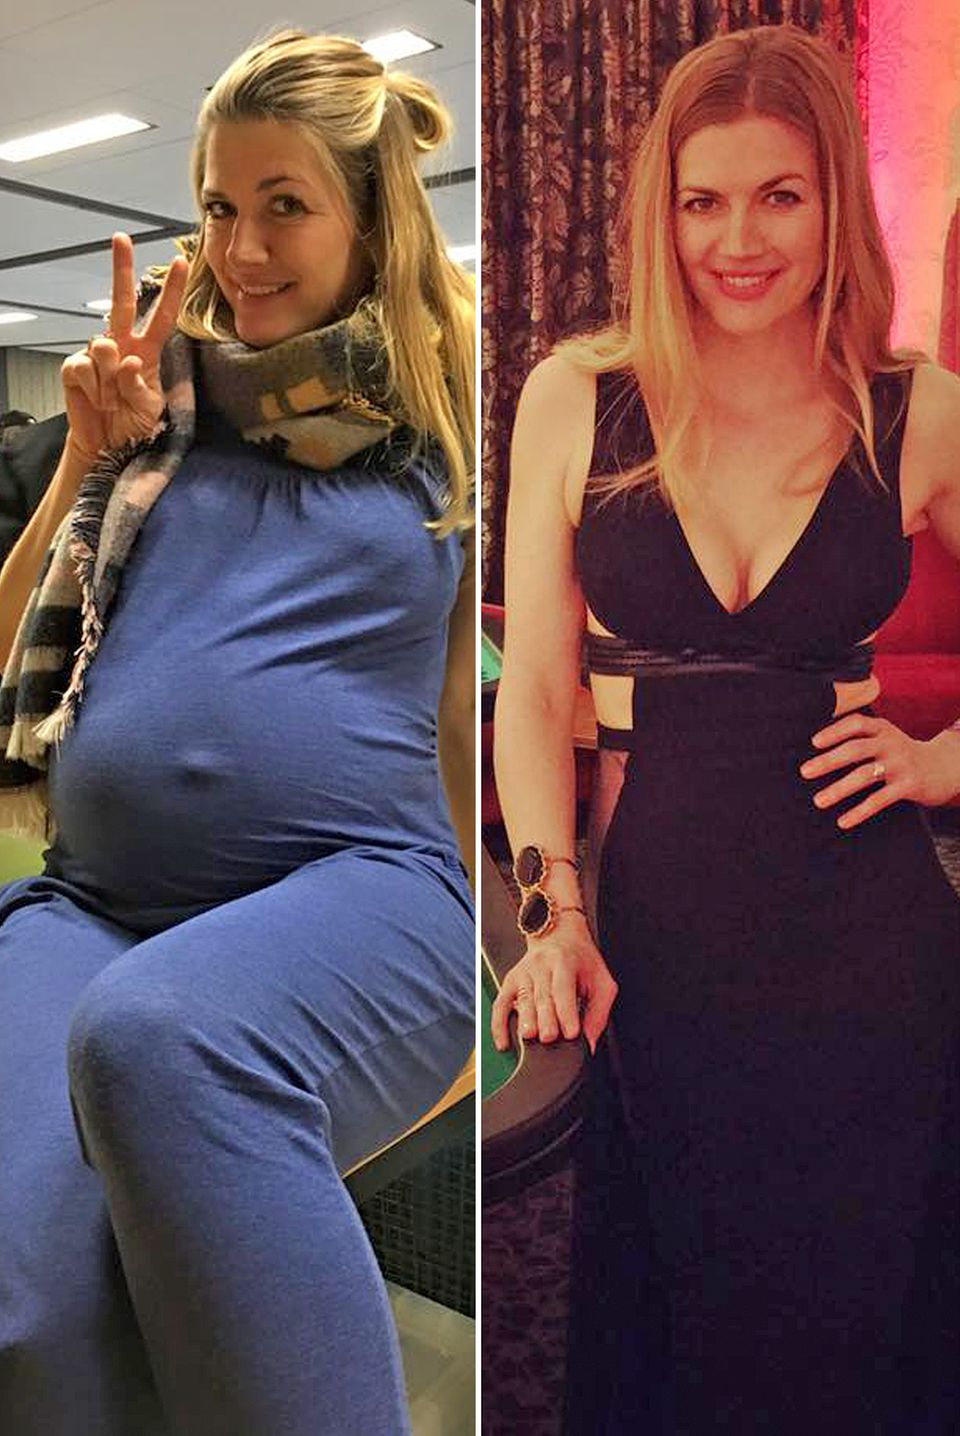 Schauspielerin Nina Bott wurde im Dezember 2015 Mutter der kleinen Luna. Nur knappe vier Monate später zeigt sie ihren bemerkenswert schlanken und fitten After-Baby-Body.